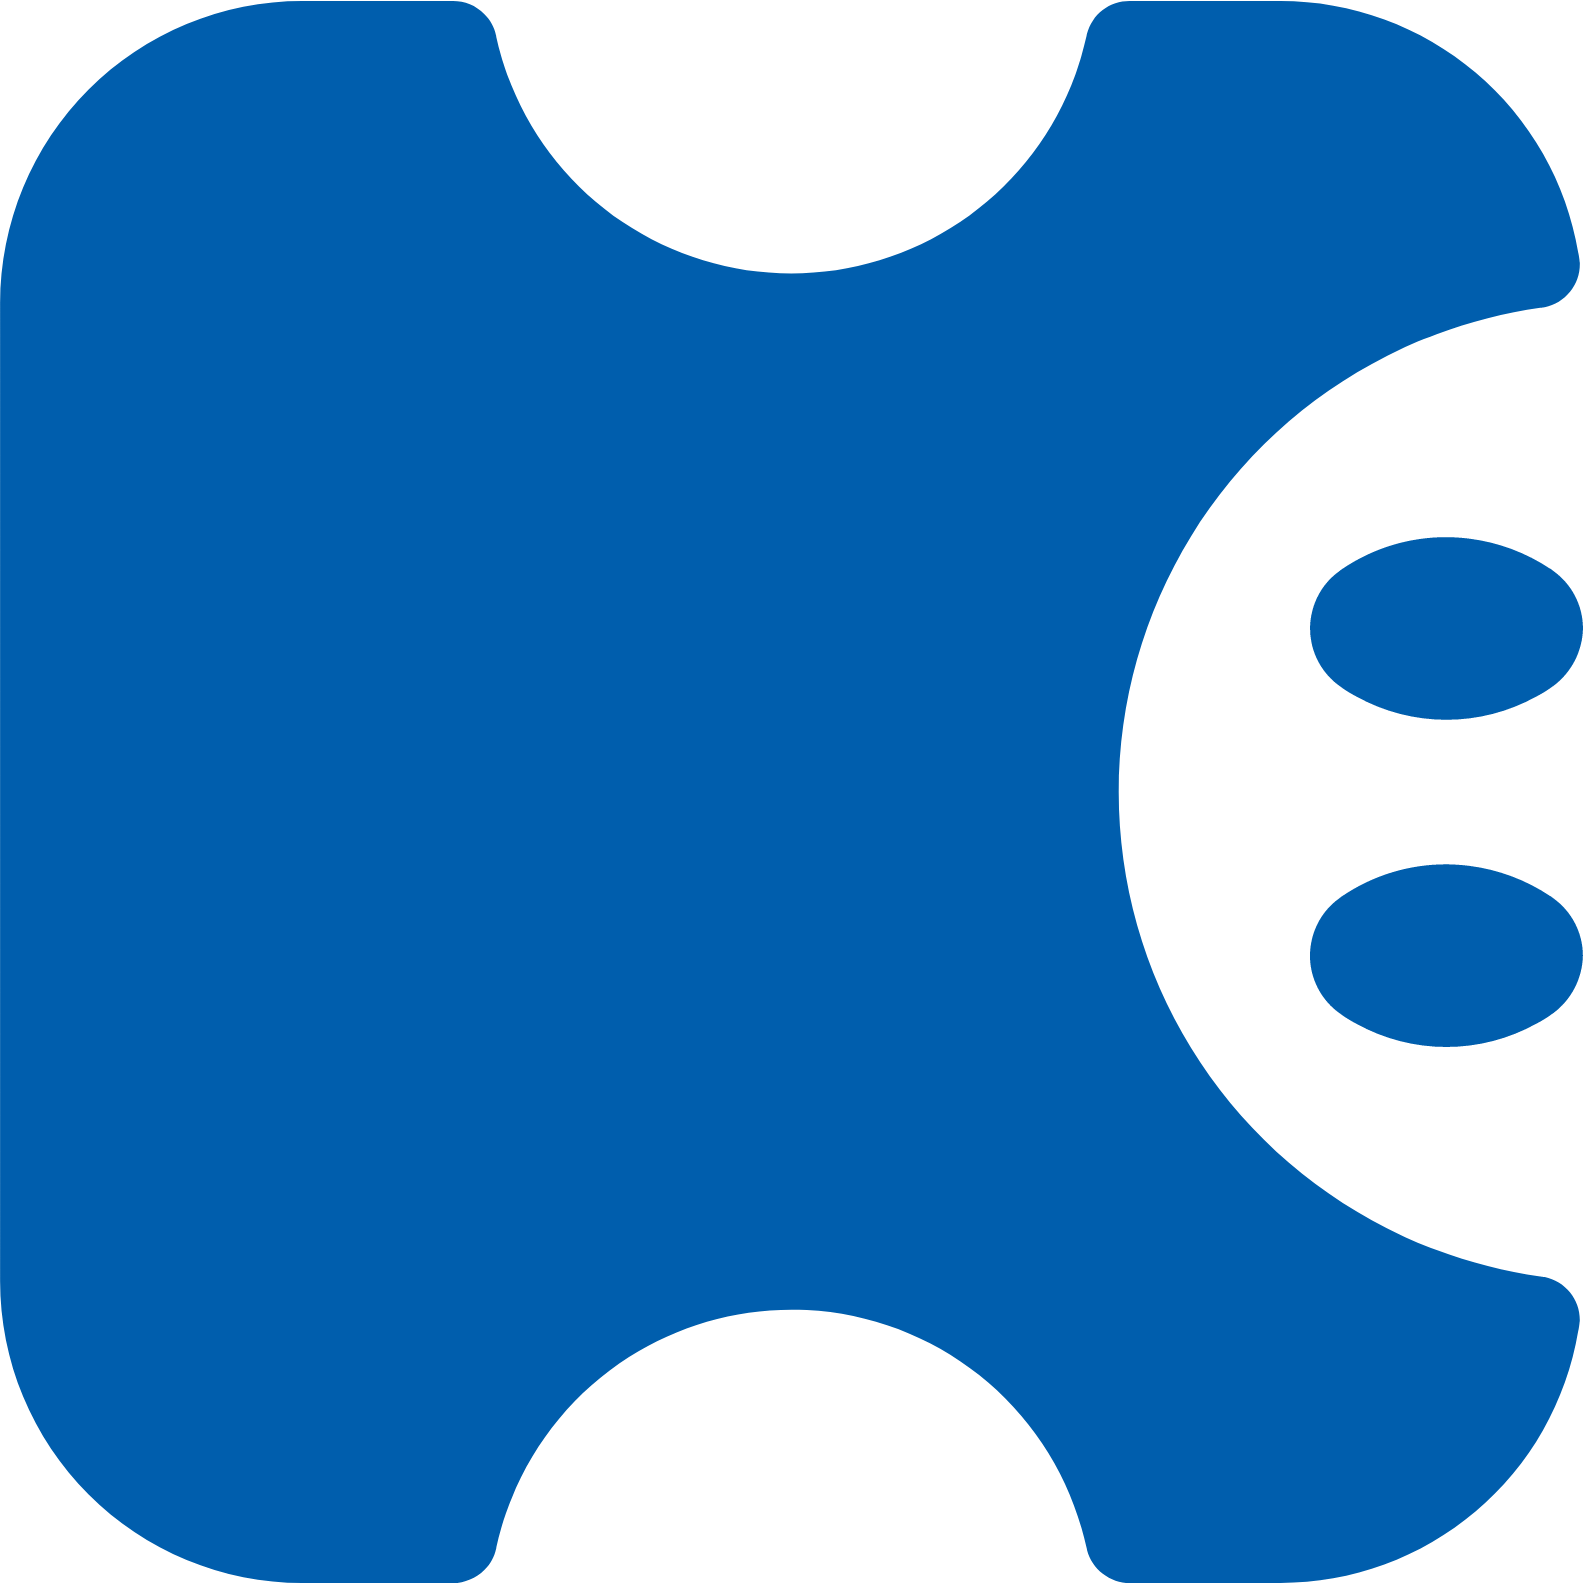 KLab logo (transparent PNG)